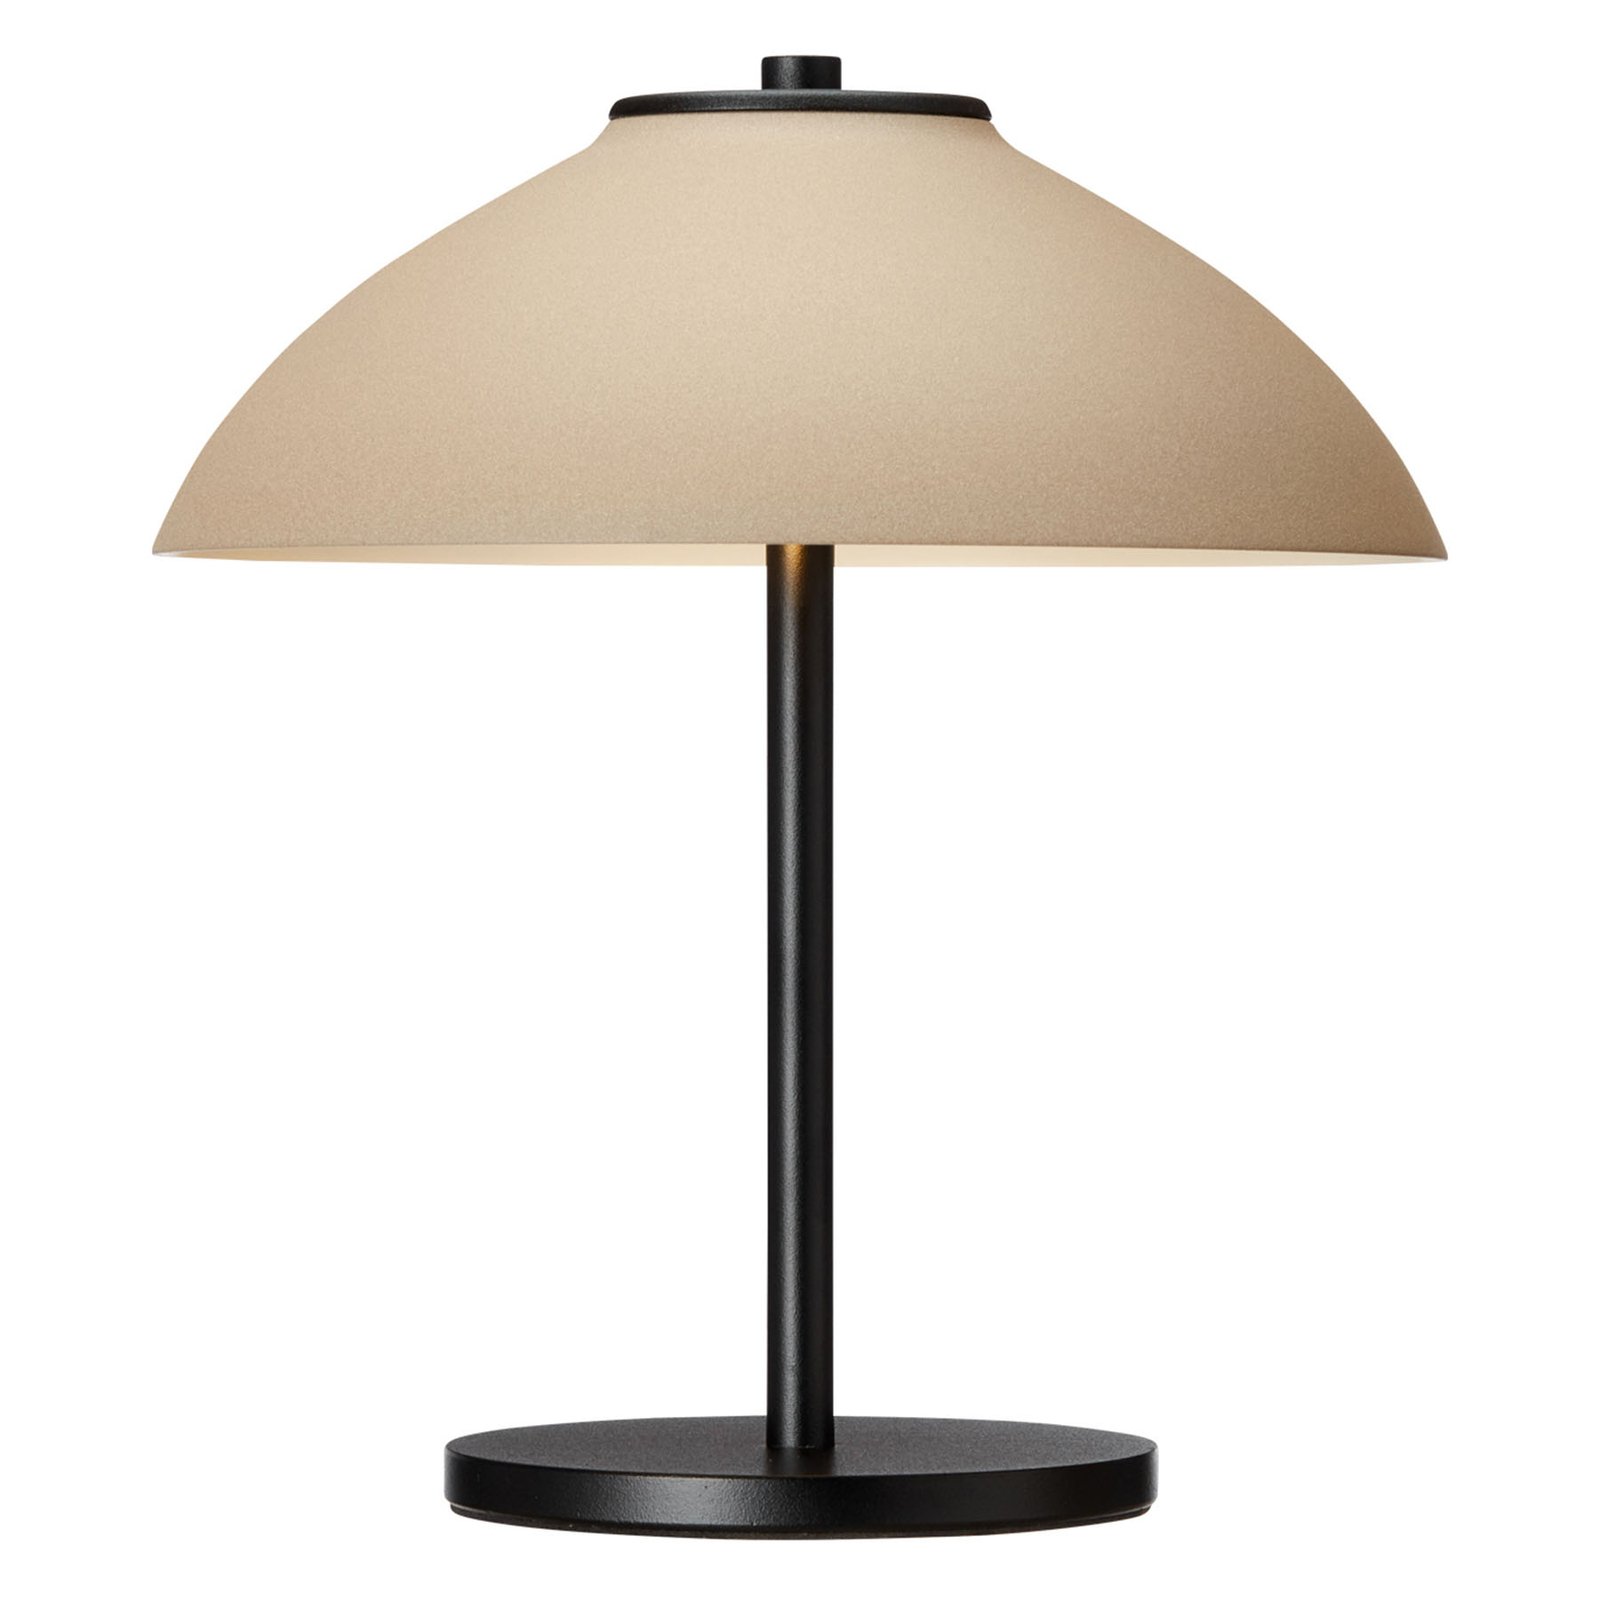 Lampe à poser Vali, hauteur 25,8 cm, noire/beige